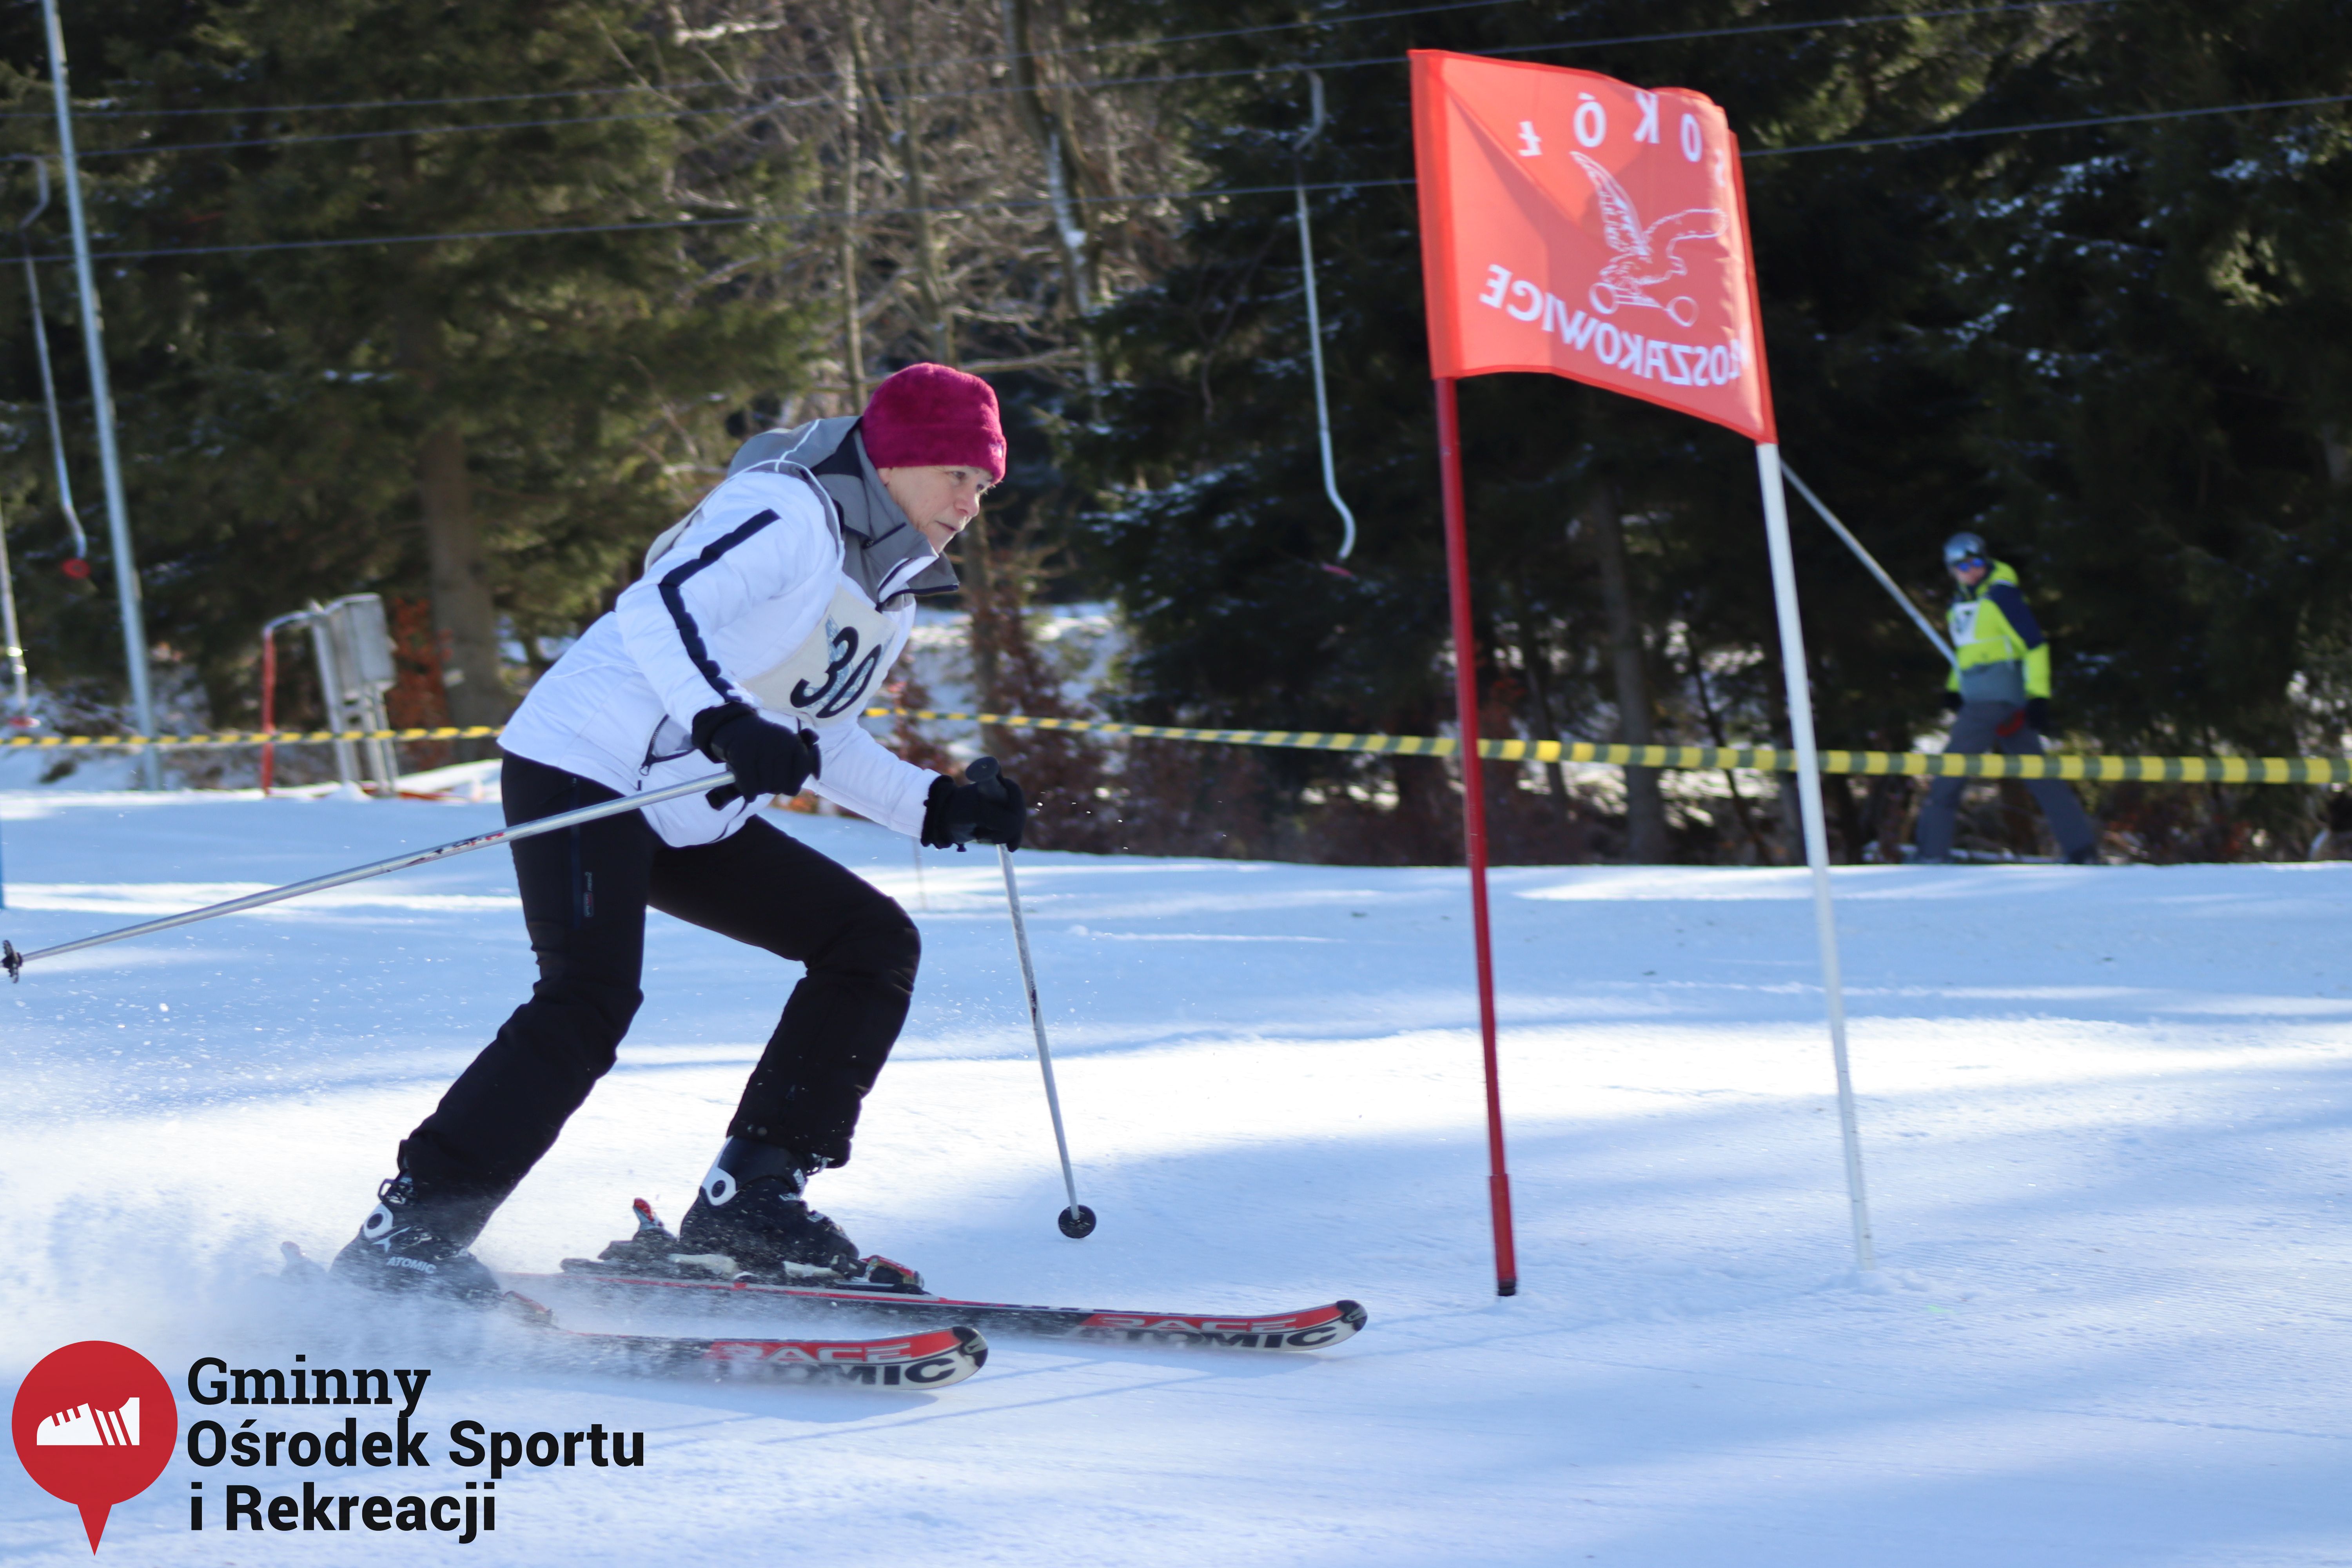 2022.02.12 - 18. Mistrzostwa Gminy Woszakowice w narciarstwie057.jpg - 1,45 MB